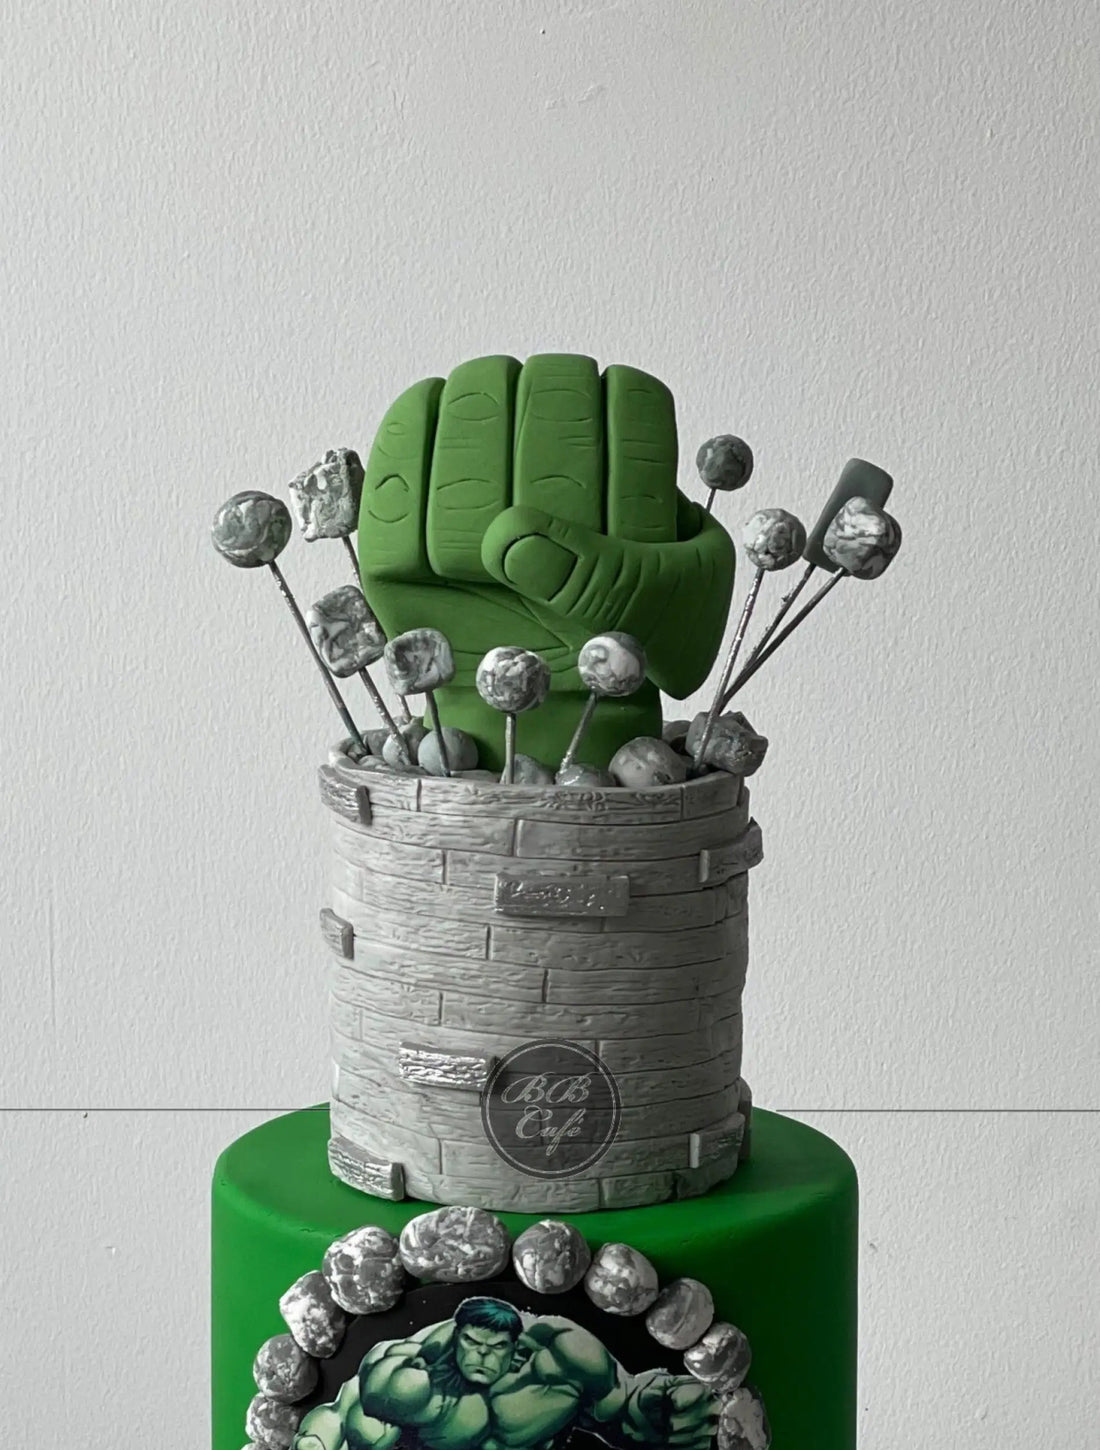 Big hulk in fondant - custom cake